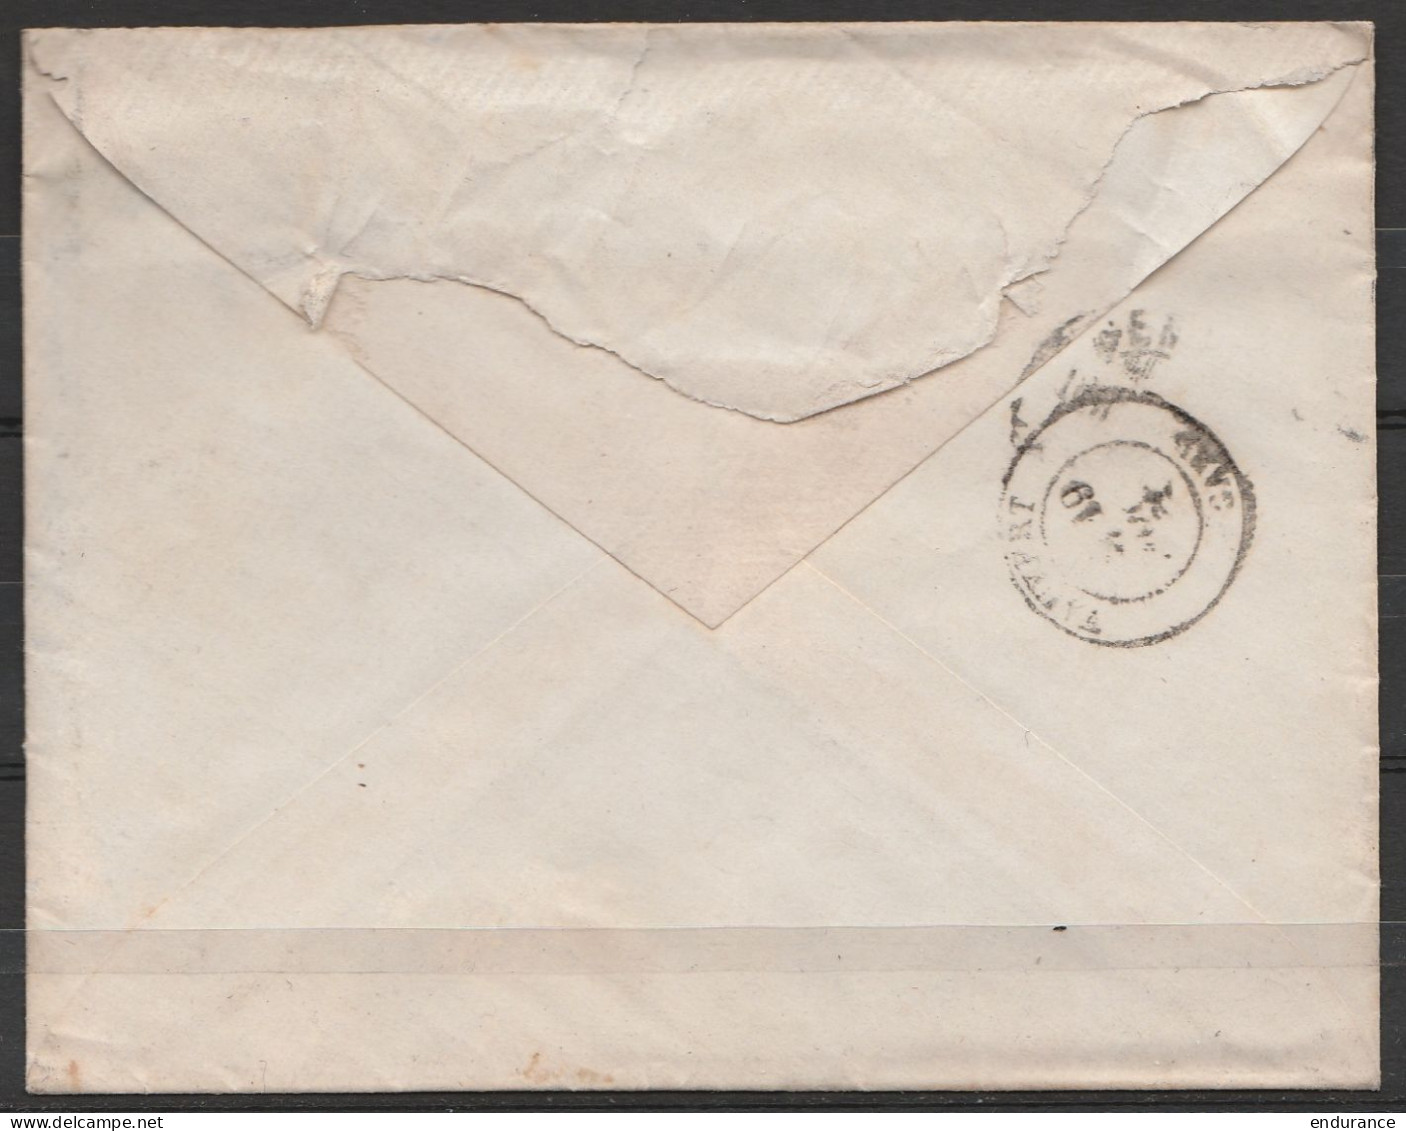 Suisse - L. Affr. 25c Càpt VEZENAZ /13.III.1880 Pour Château De B?? à VAUVERT (Gard) - Cartas & Documentos